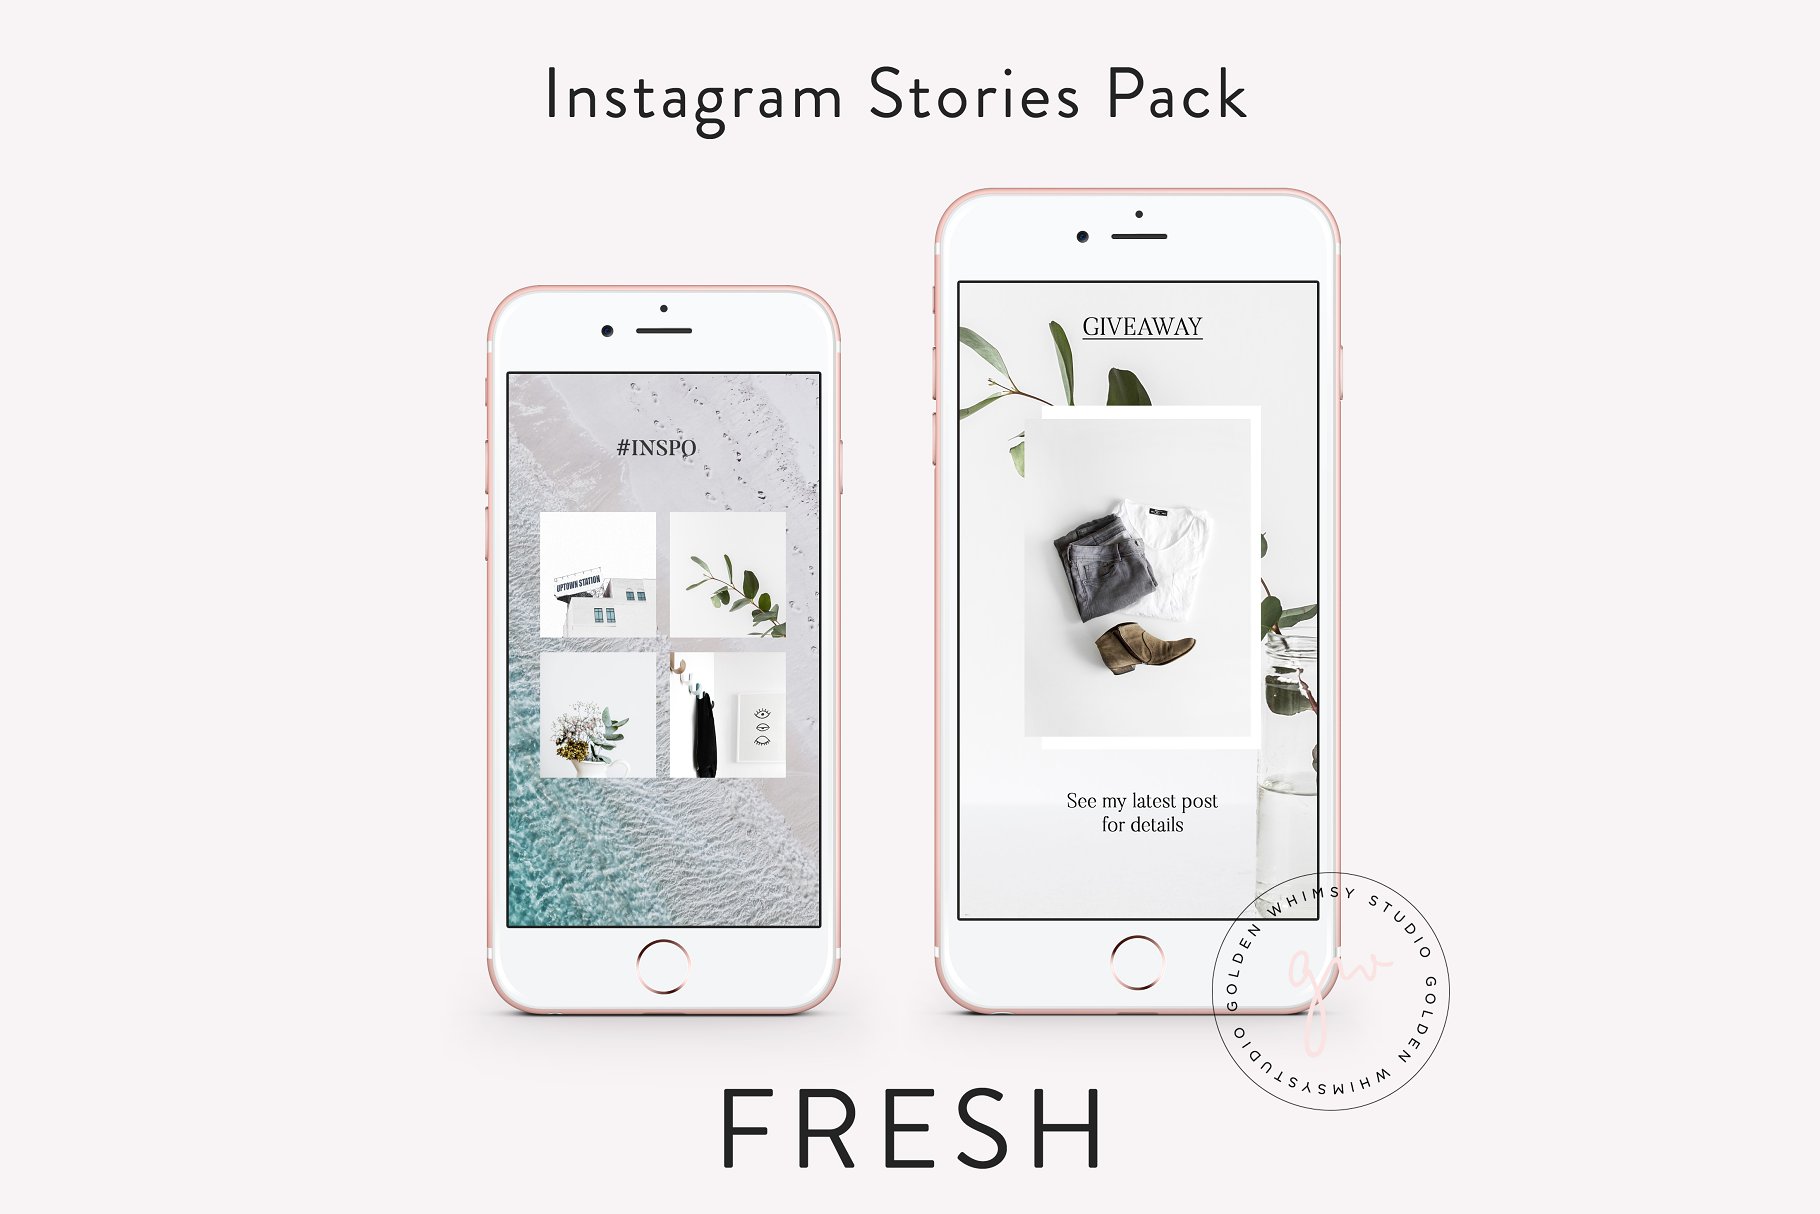 时尚干净利落的Instagram故事贴图模板蚂蚁素材精选 FRESH Insta Stories插图